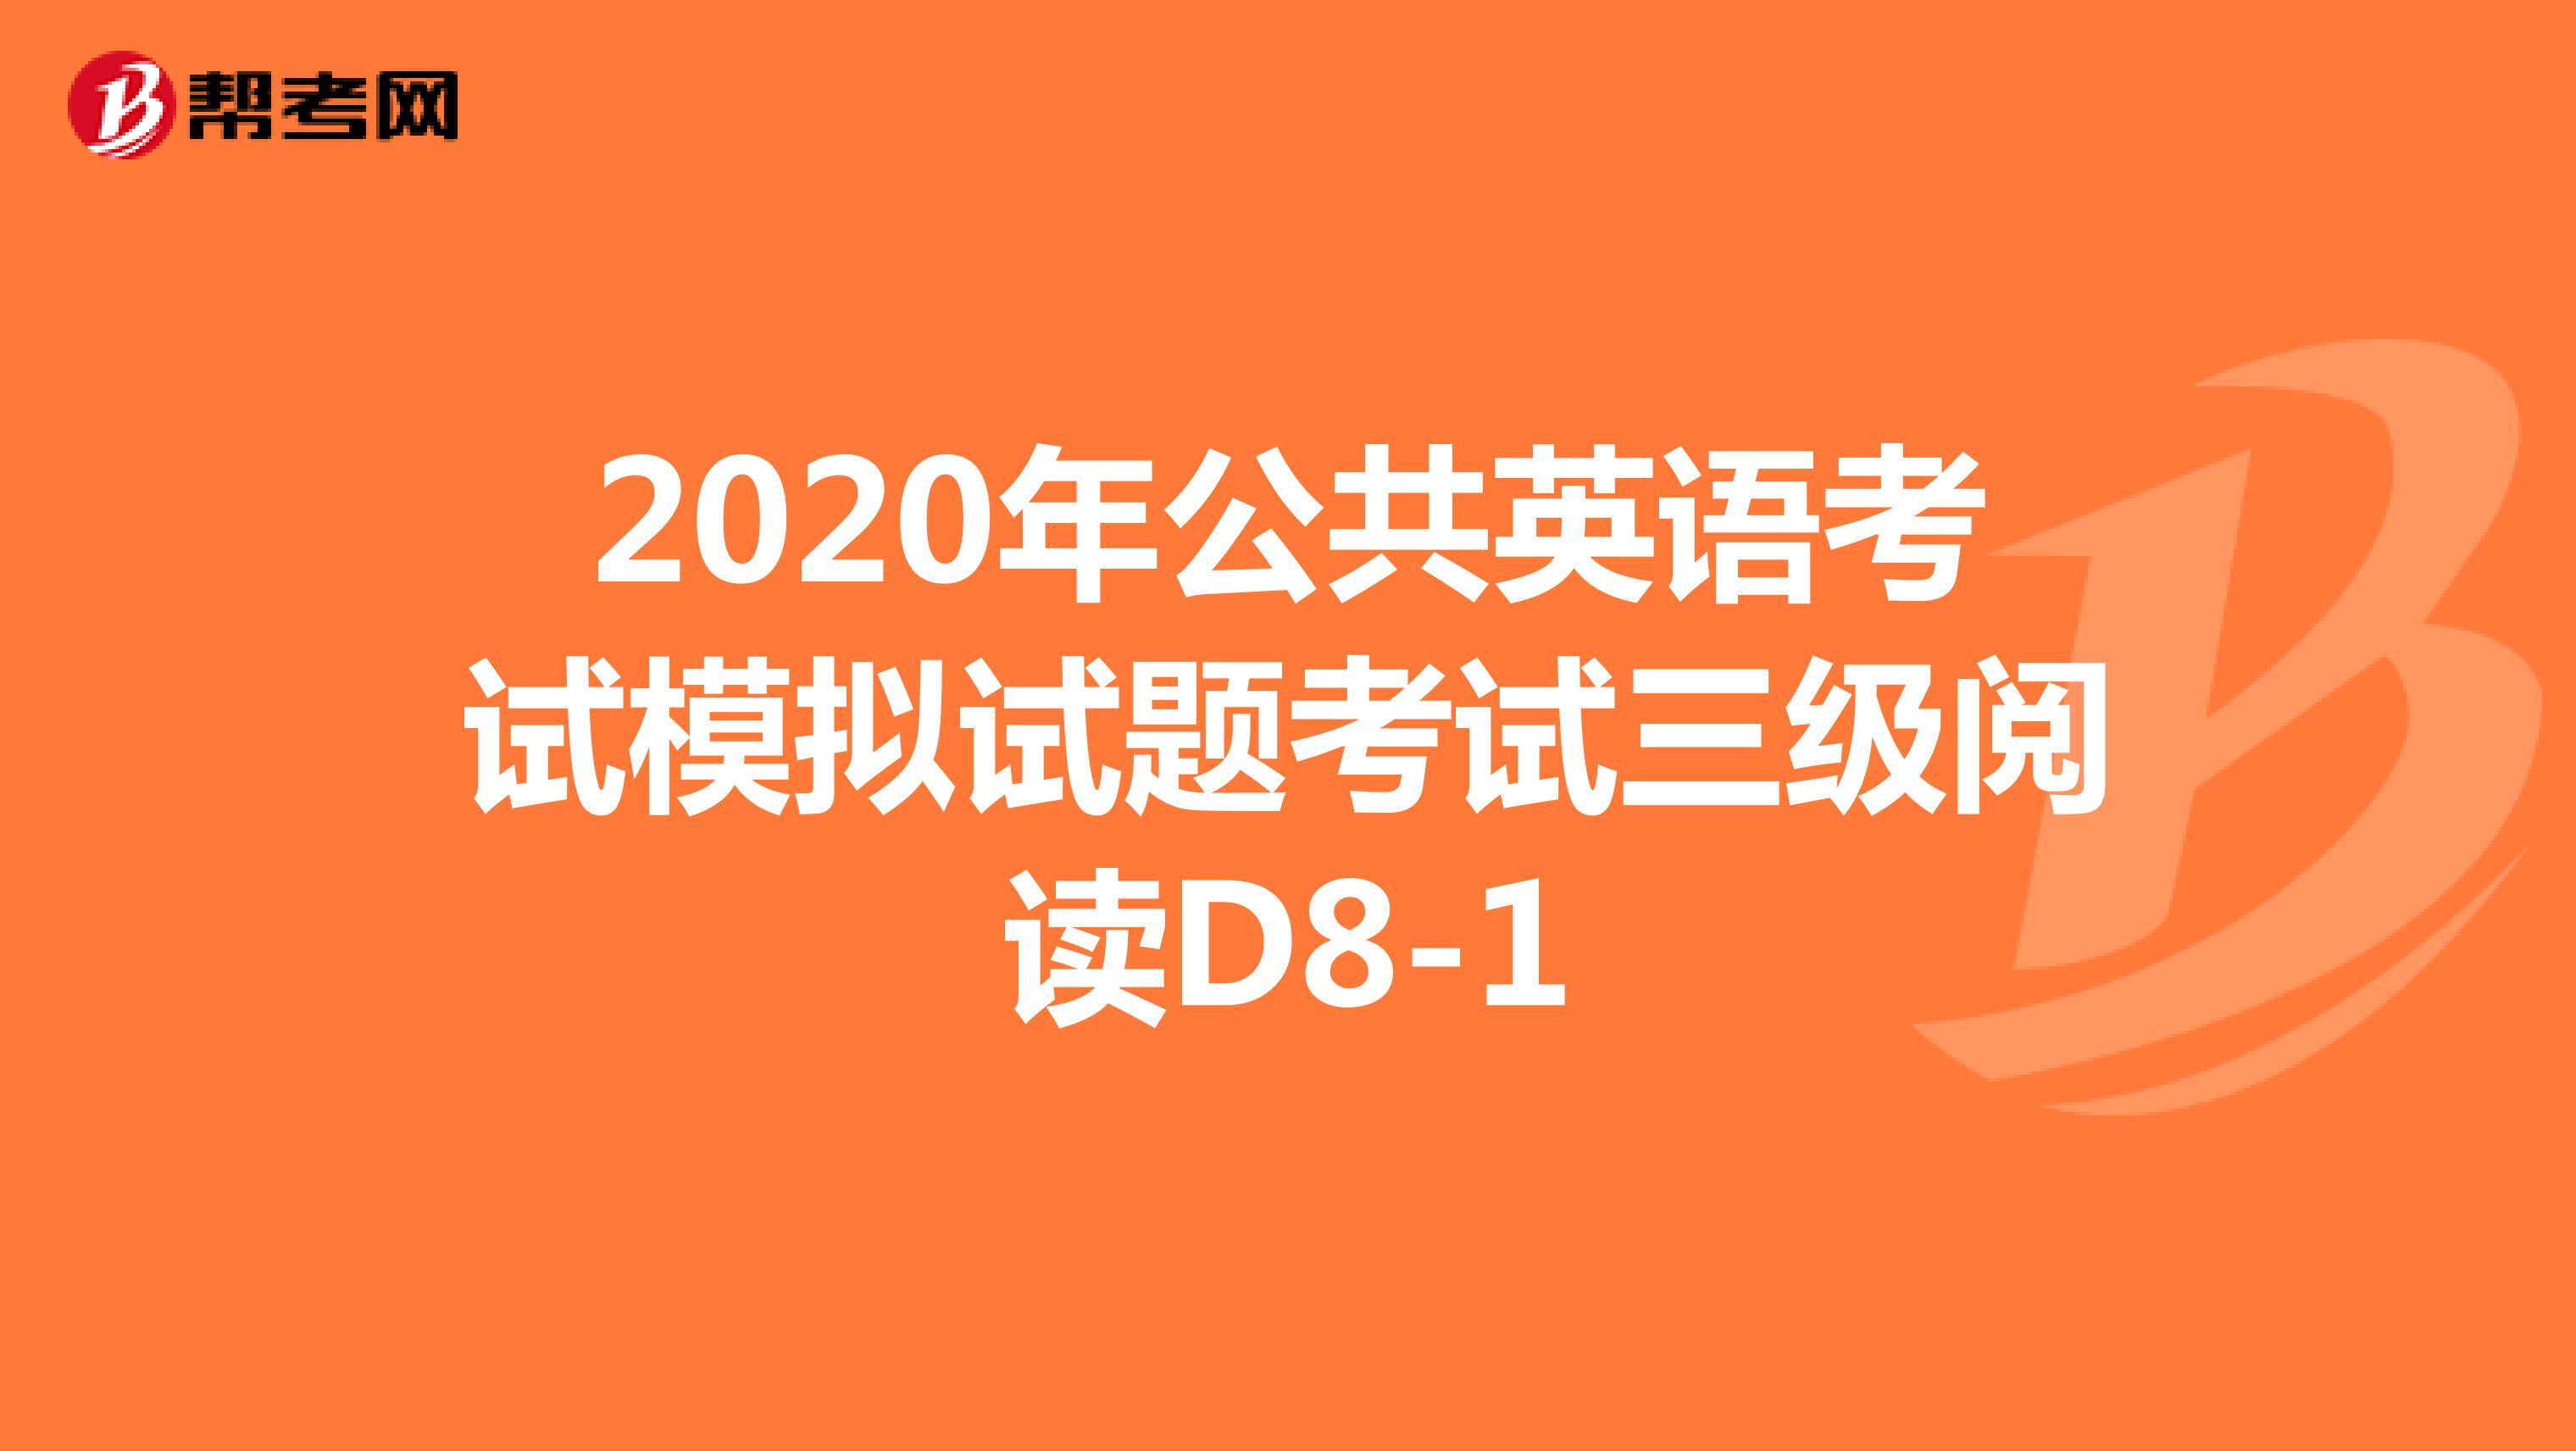 2020年公共英语考试模拟试题考试三级阅读D8-1